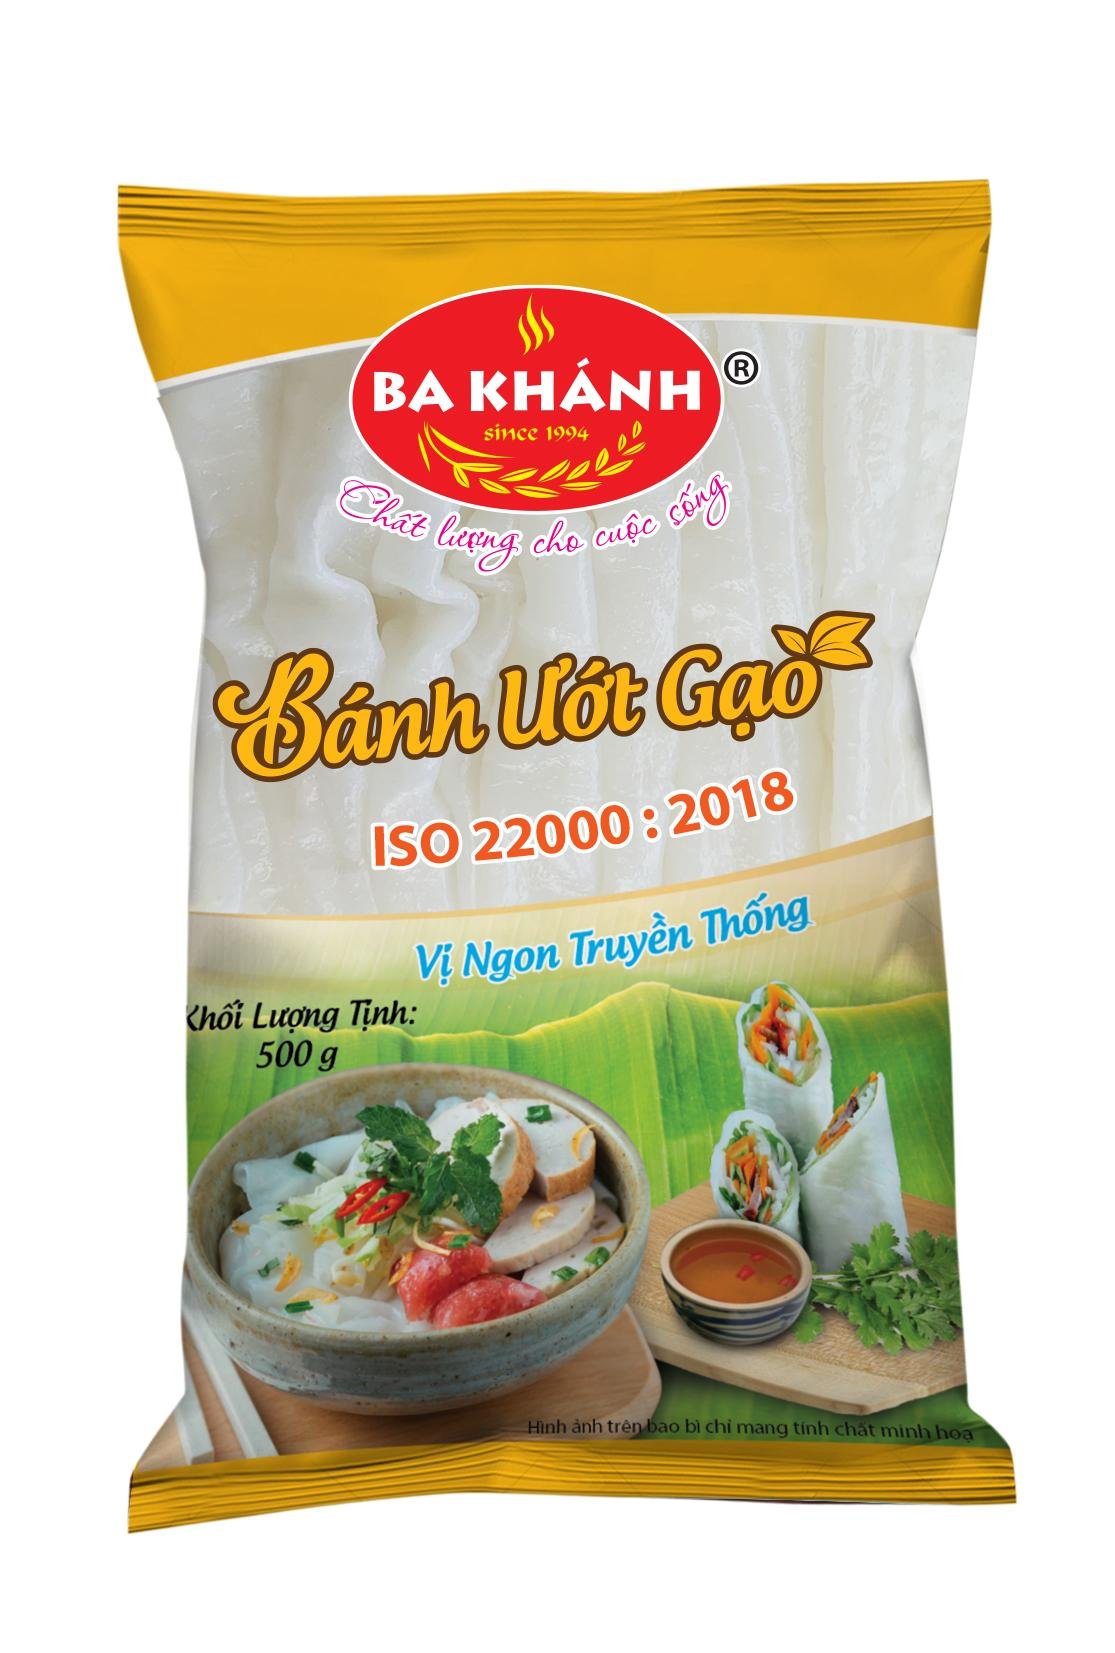 Bánh ướt gạo Ba Khánh